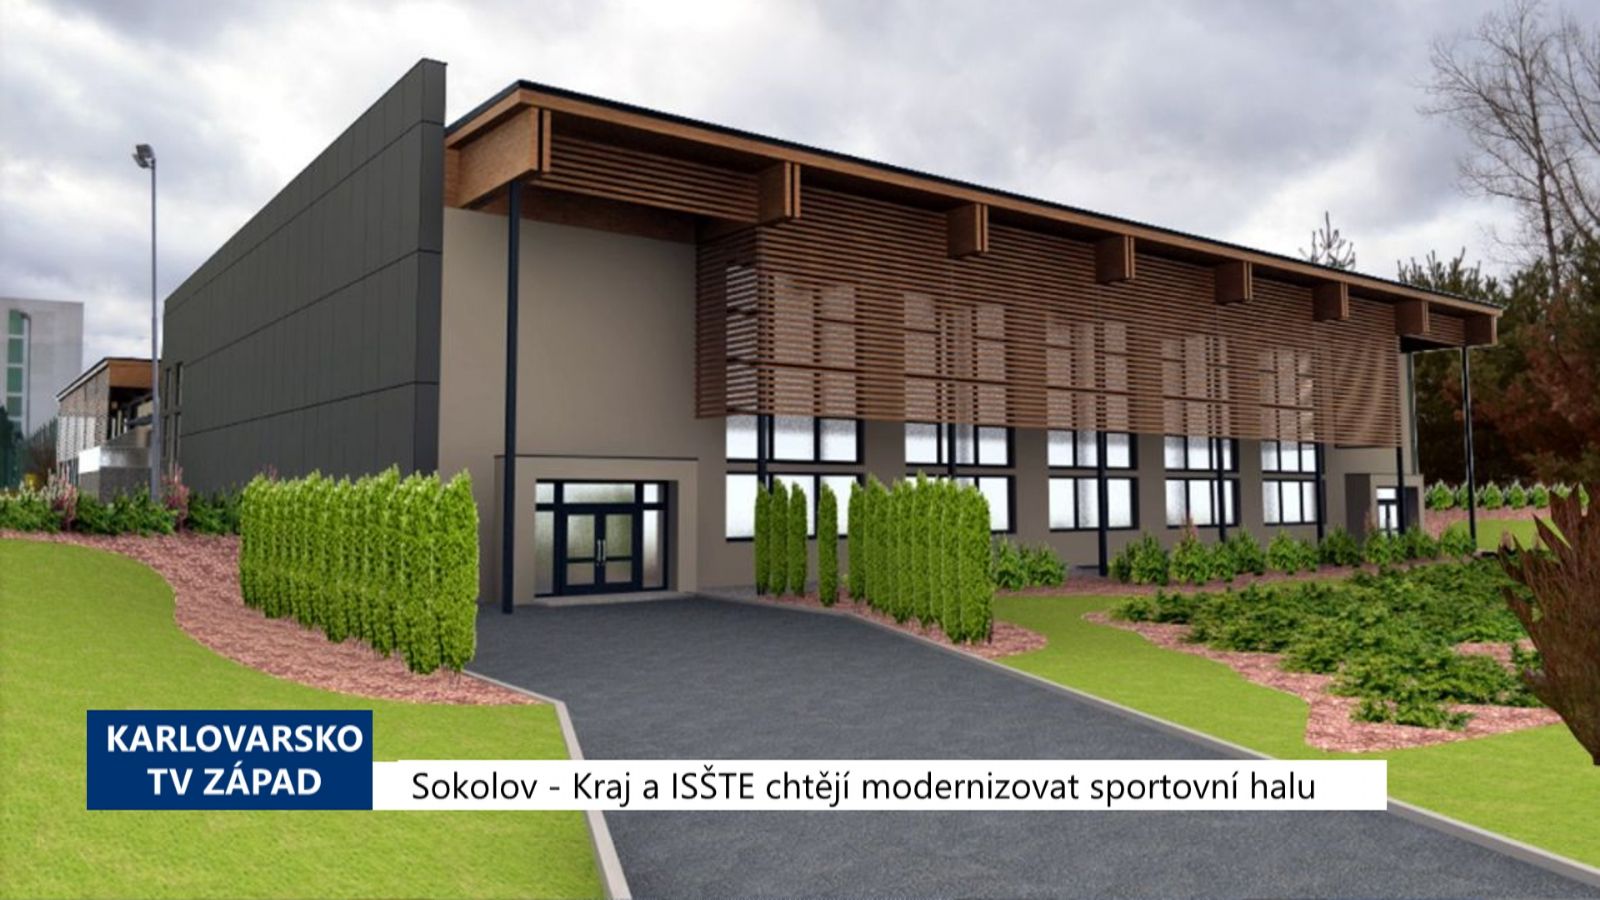 Sokolov: Kraj a ISŠTE chtějí modernizovat sportovní halu (TV Západ)